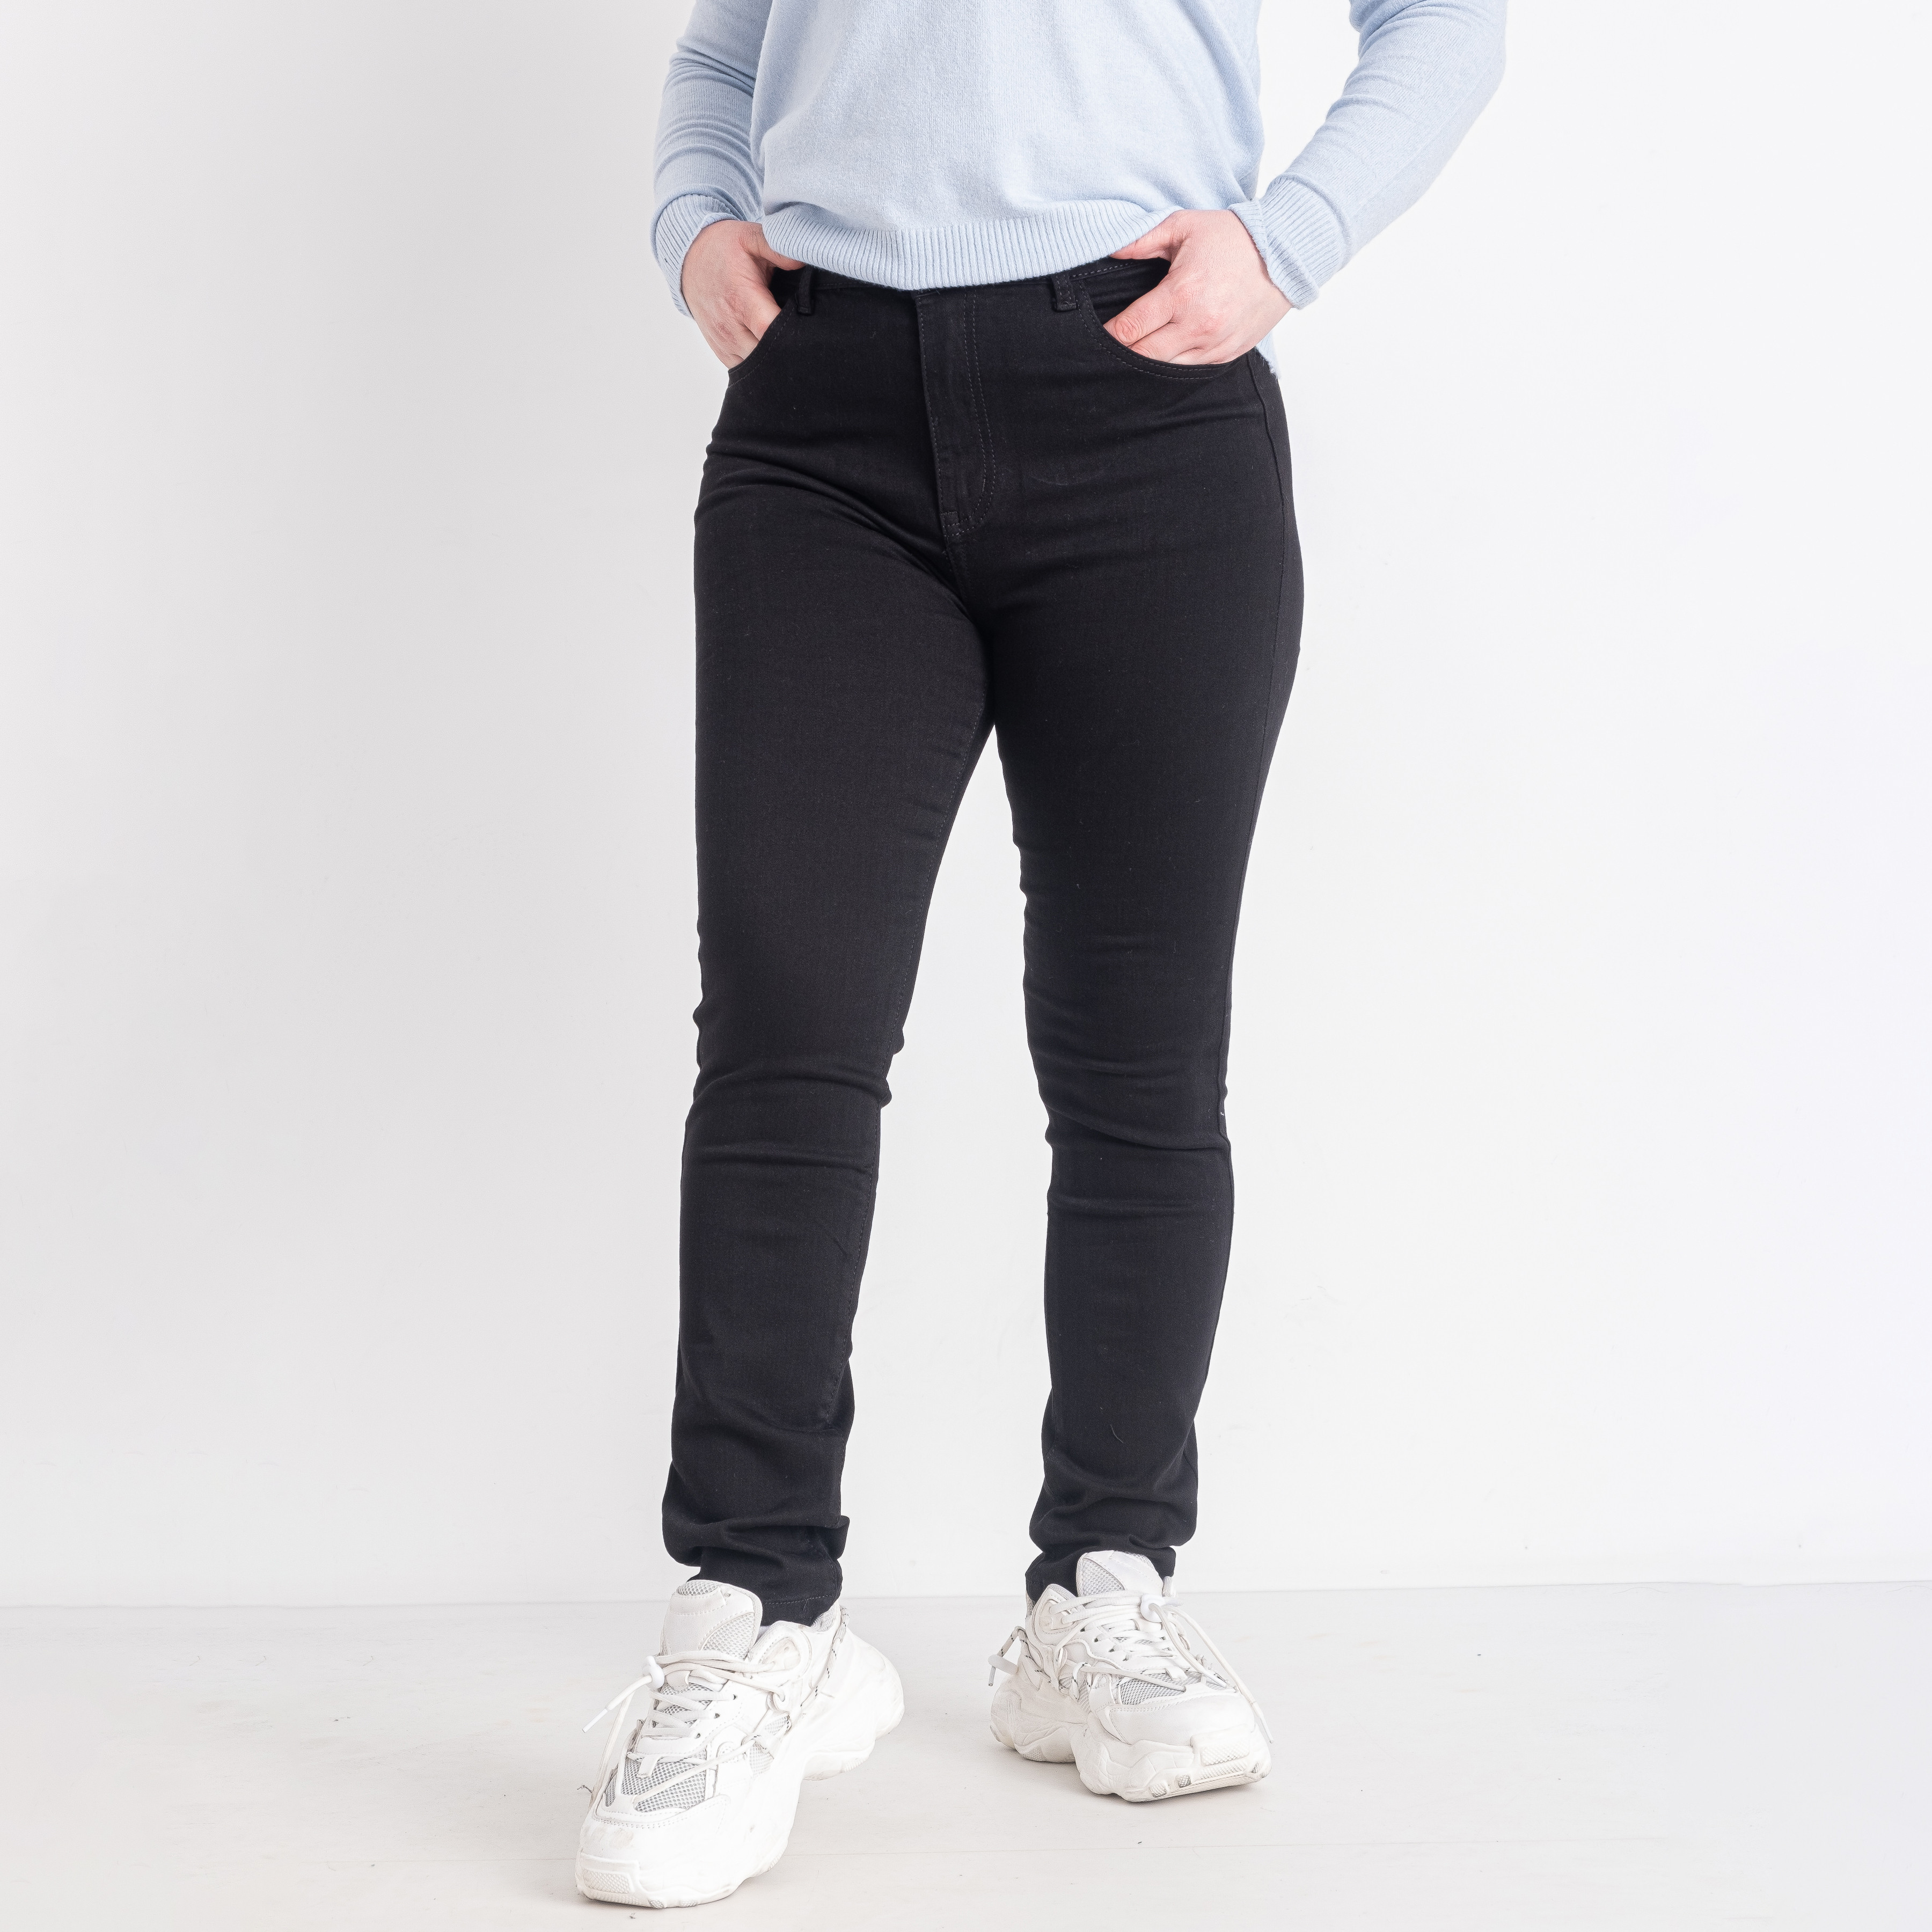 0083 черные женские джинсы (NEW JEANS, стрейчевые, размеры батал: 31. 32. 33. 34. 36. 38)